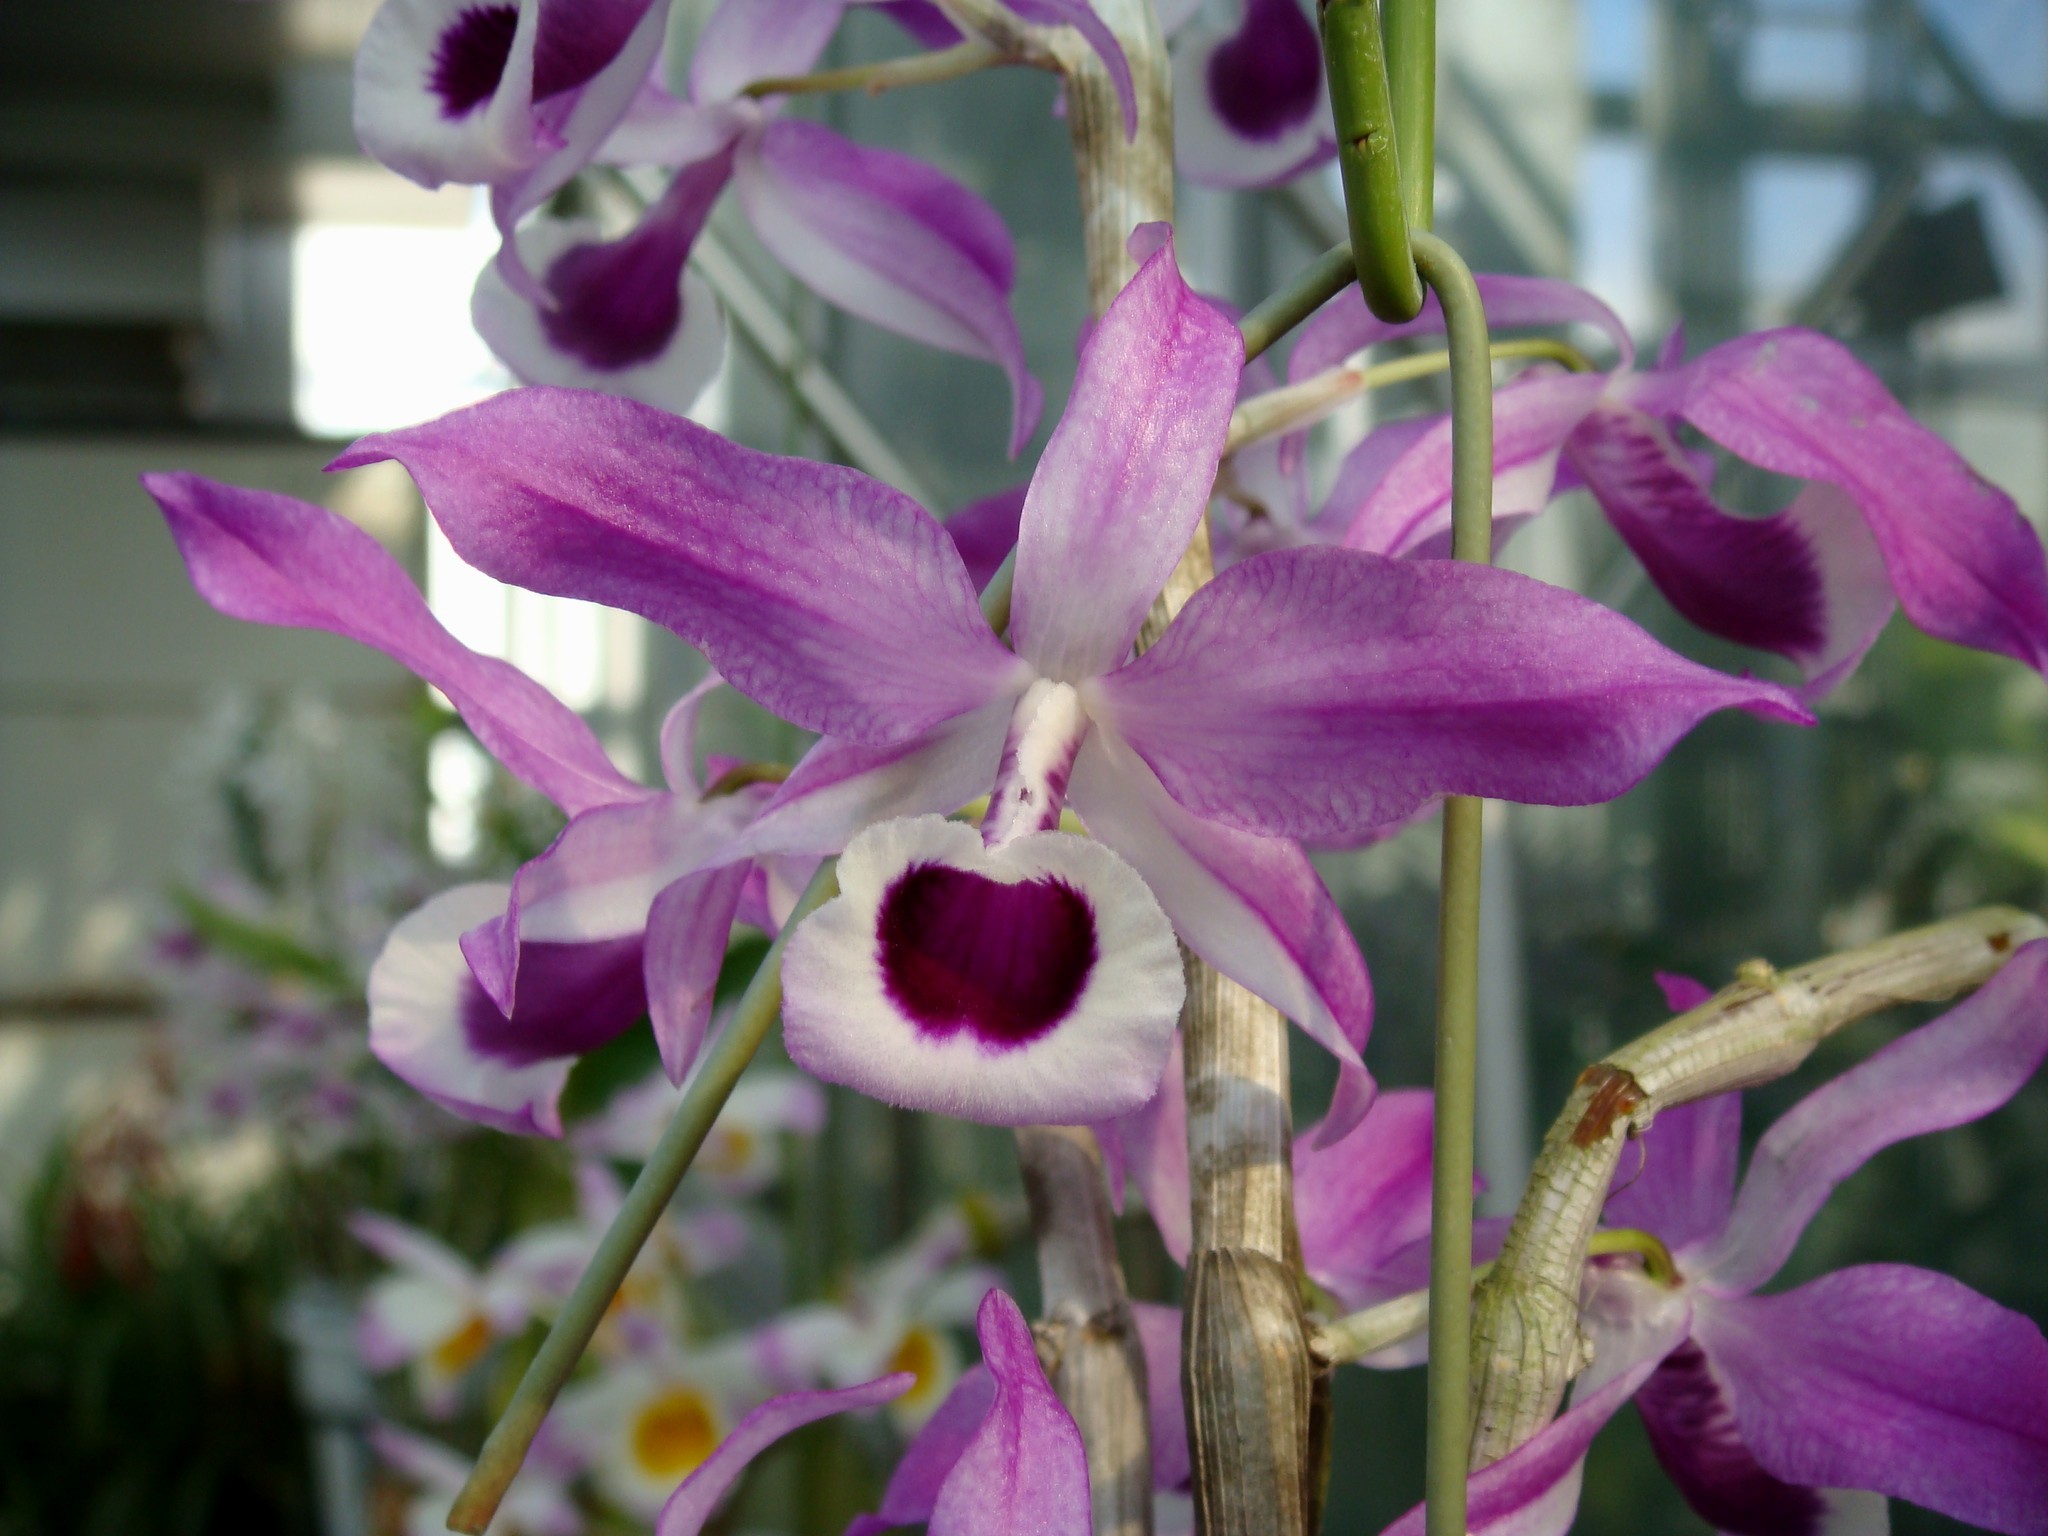 http://orchids.la.coocan.jp/Dendrobium/Dendrobium%20lituiflorum/DSC01897.JPG